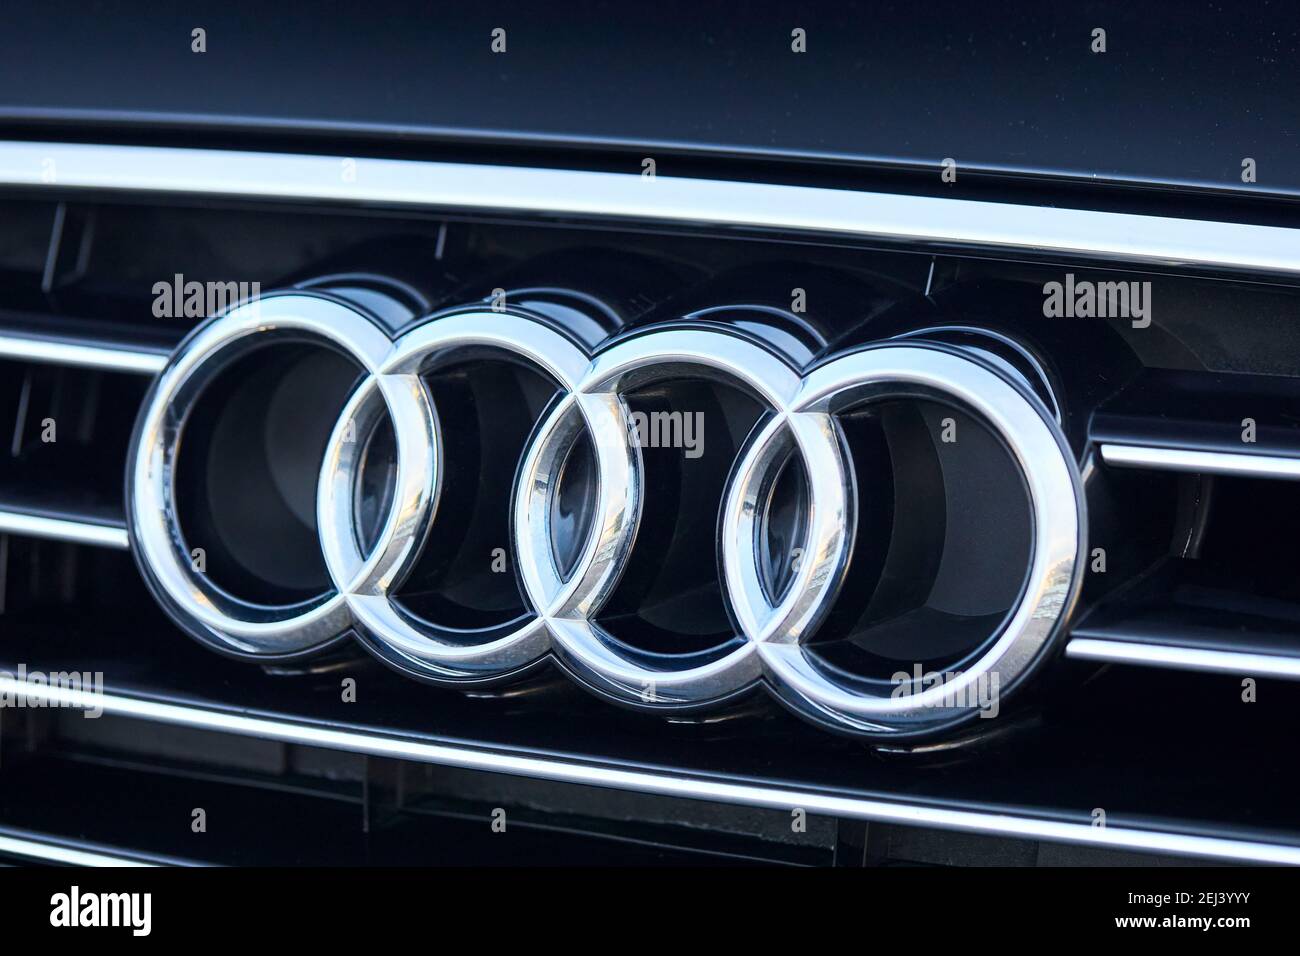 Audi Emblem on Black Background · Free Stock Photo